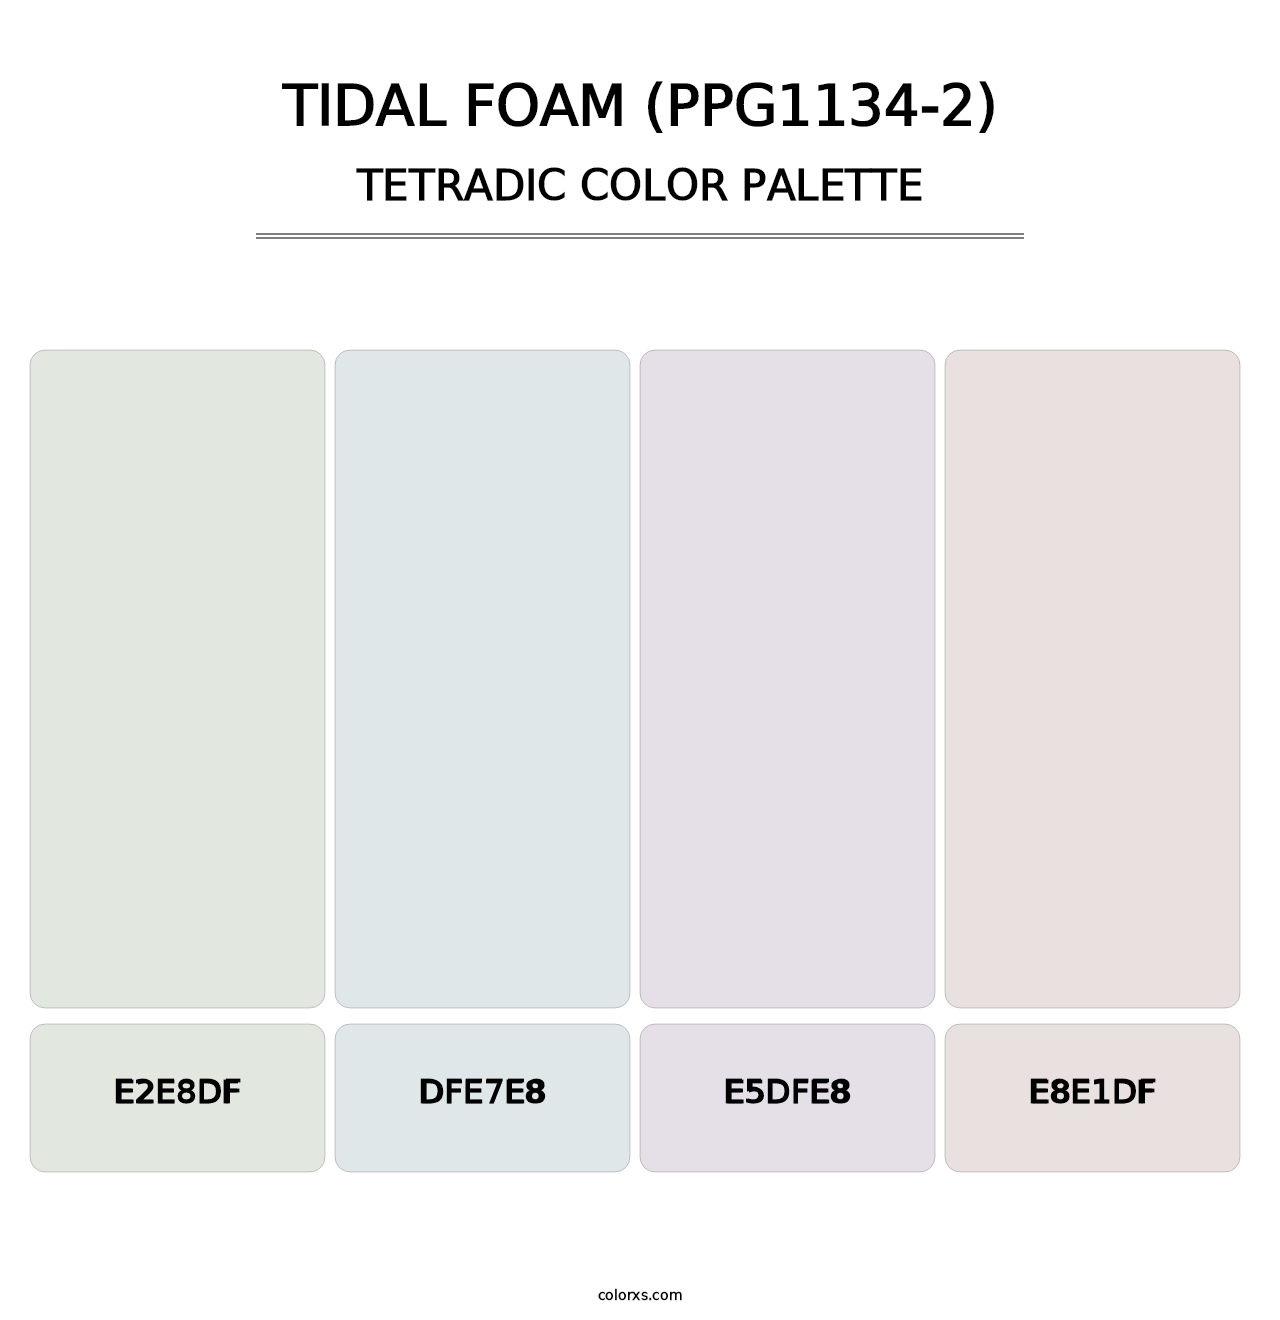 Tidal Foam (PPG1134-2) - Tetradic Color Palette